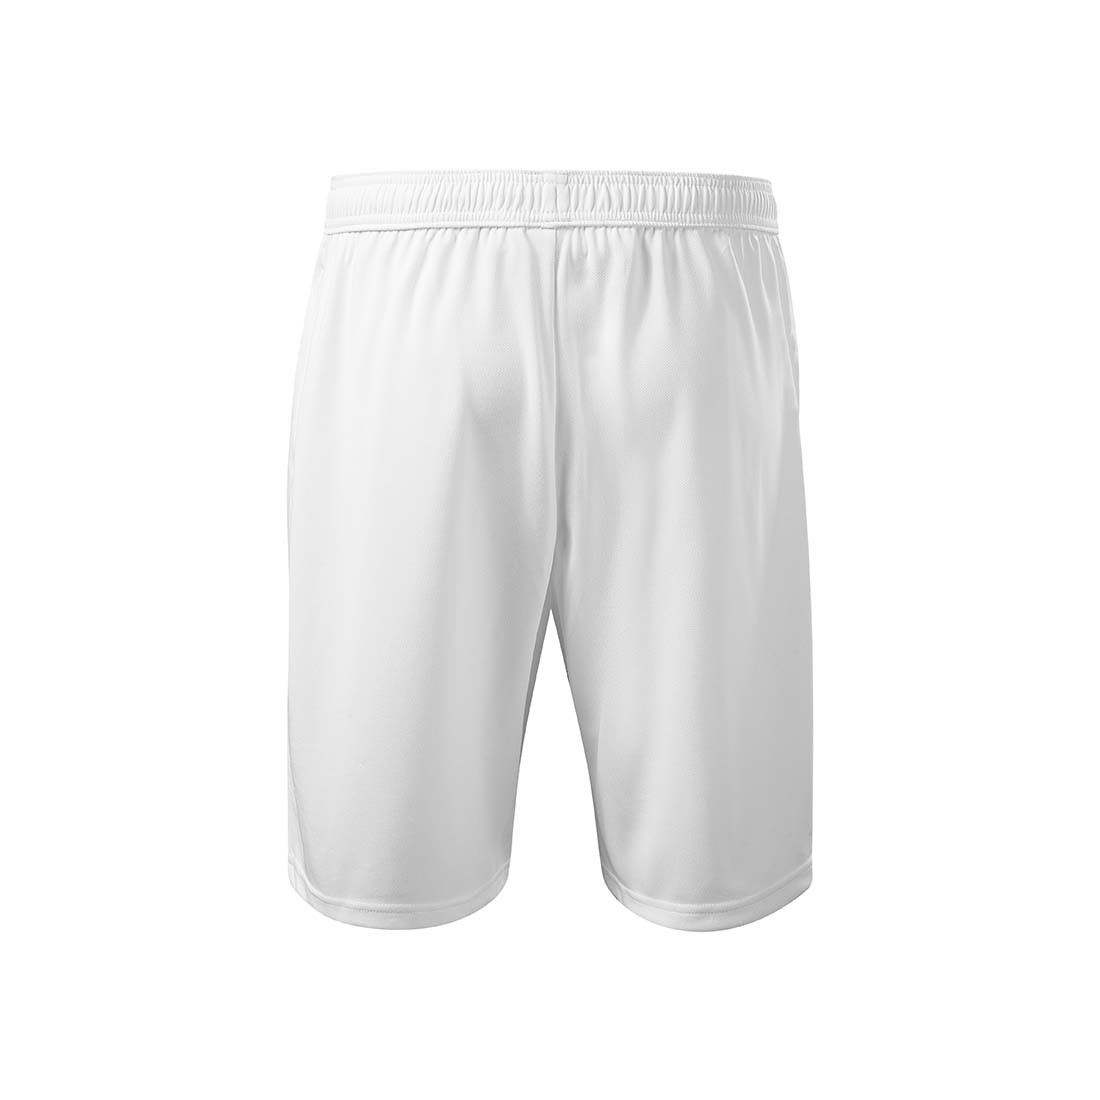 Shorts pour hommes - Les vêtements de protection